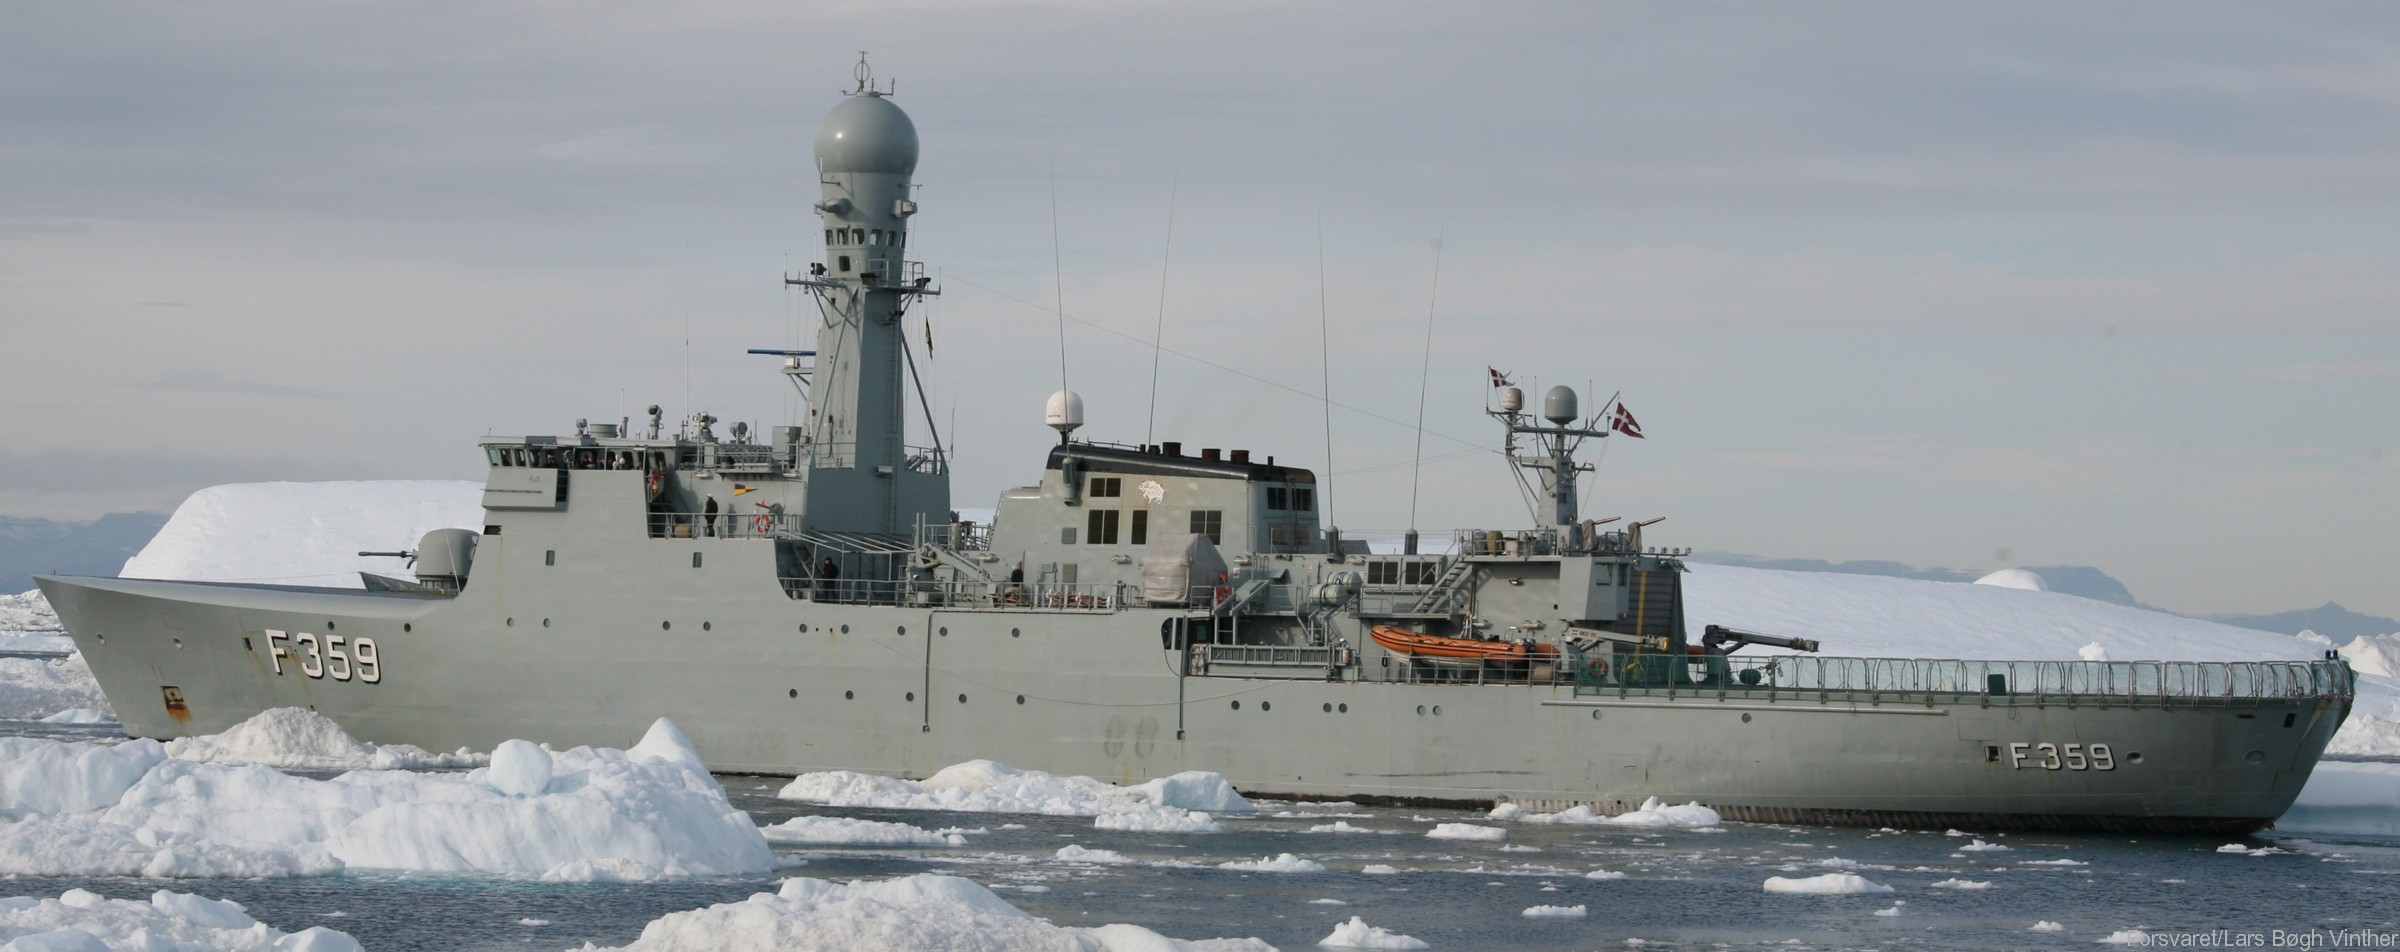 f-359 hdms vaedderen thetis class ocean patrol frigate royal danish navy kongelige danske marine kdm inspektionsskibet 28